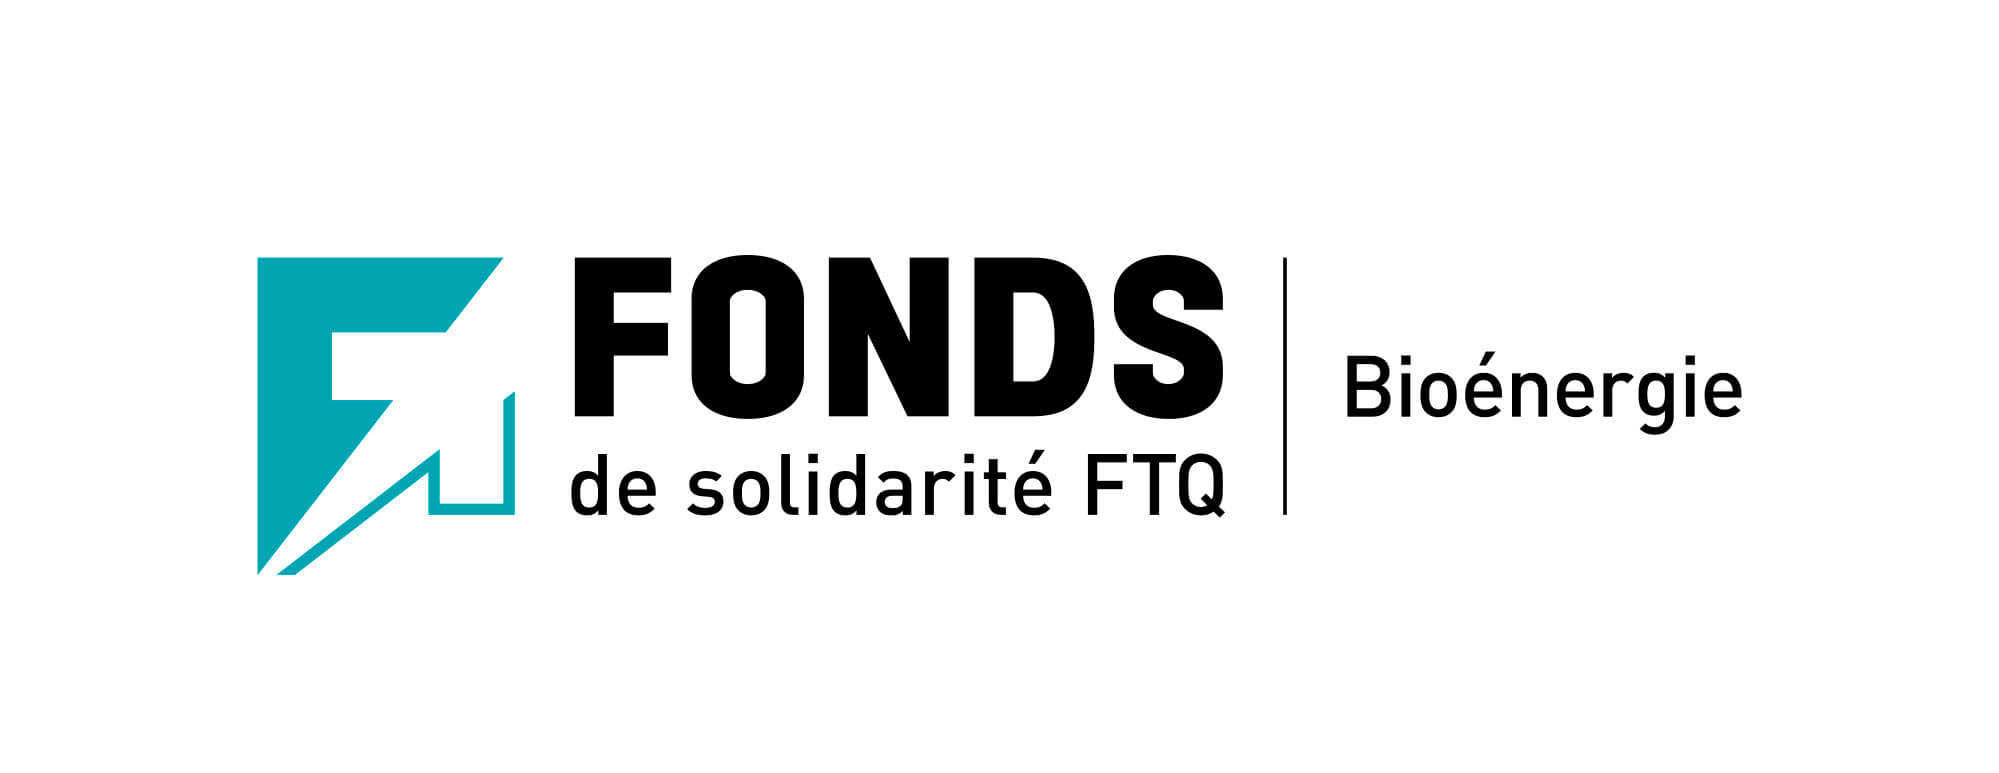 Fonds de solidarité FTQ - Bioenergy